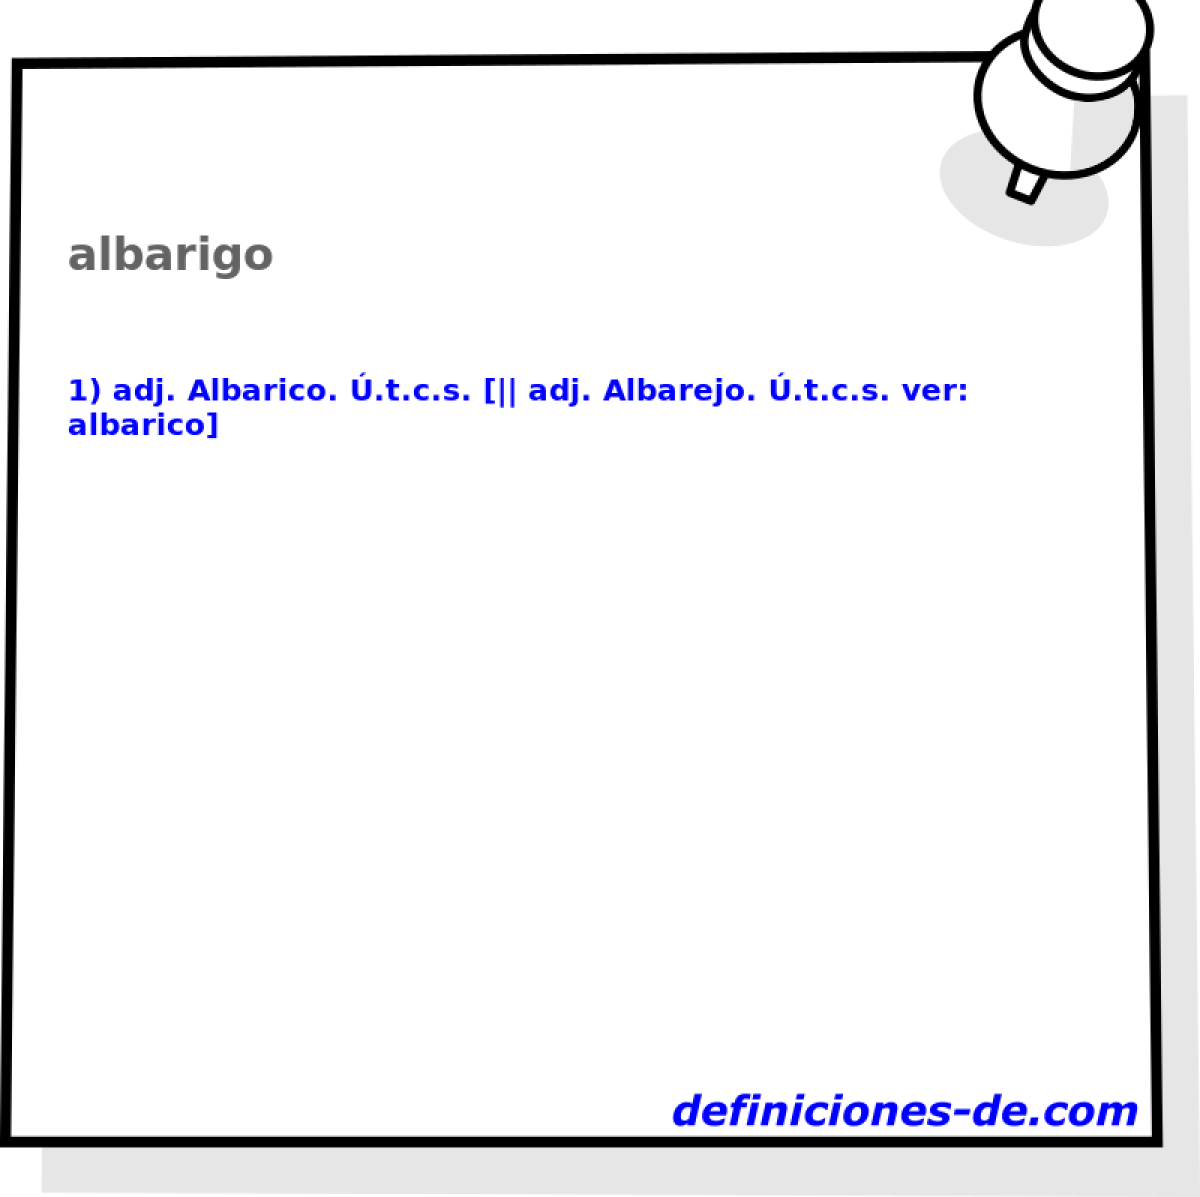 albarigo 